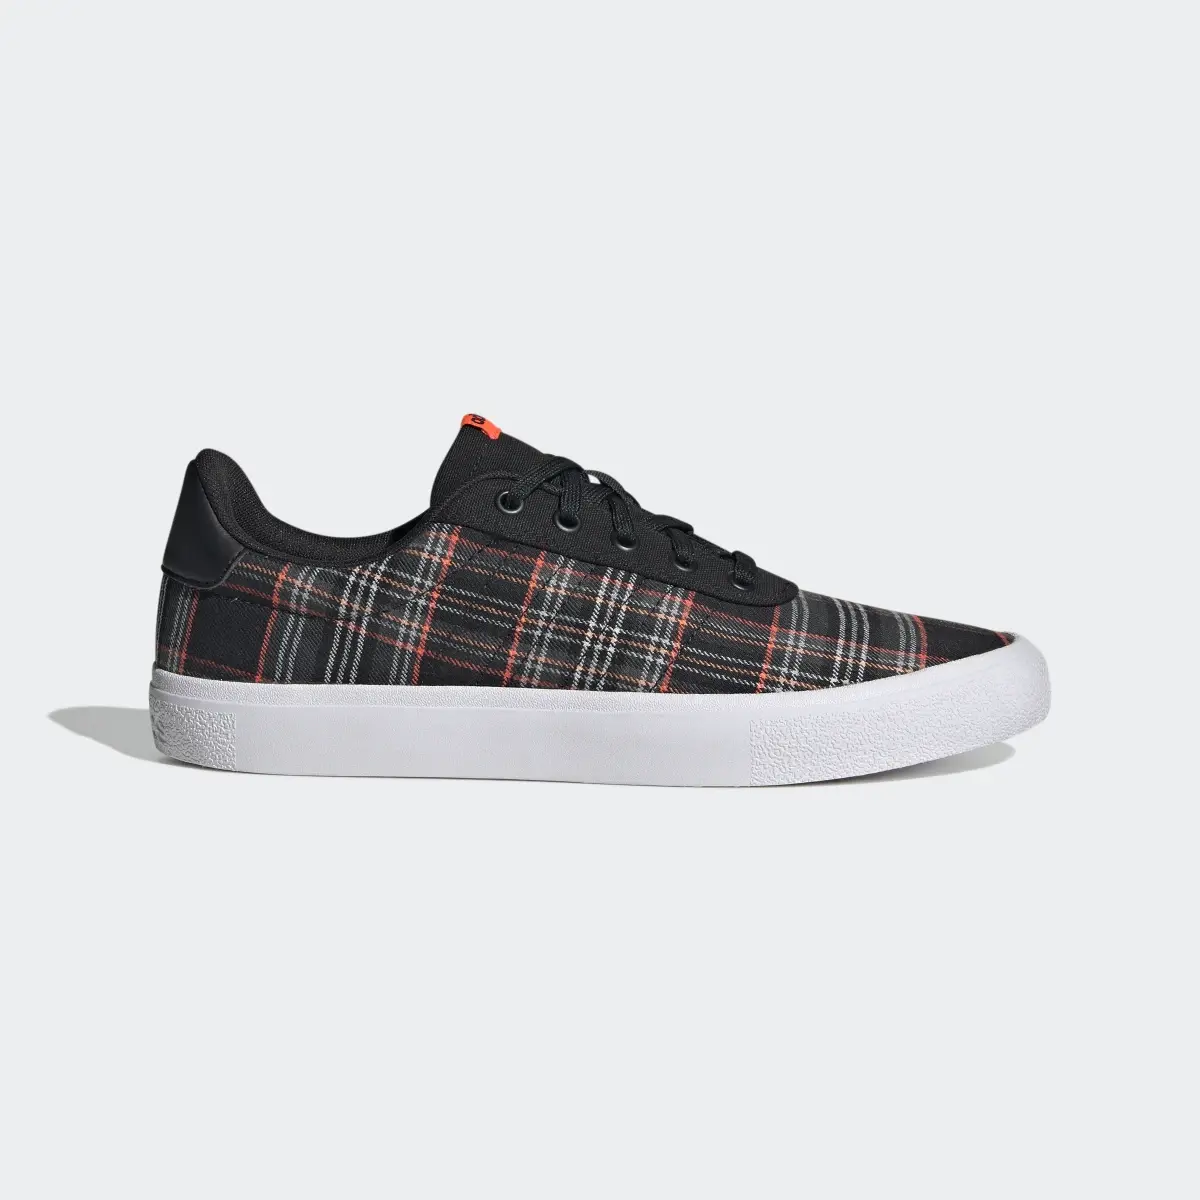 Adidas Vulc Raid3r Lifestyle Skateboarding 3-Stripes Branding Shoes. 2